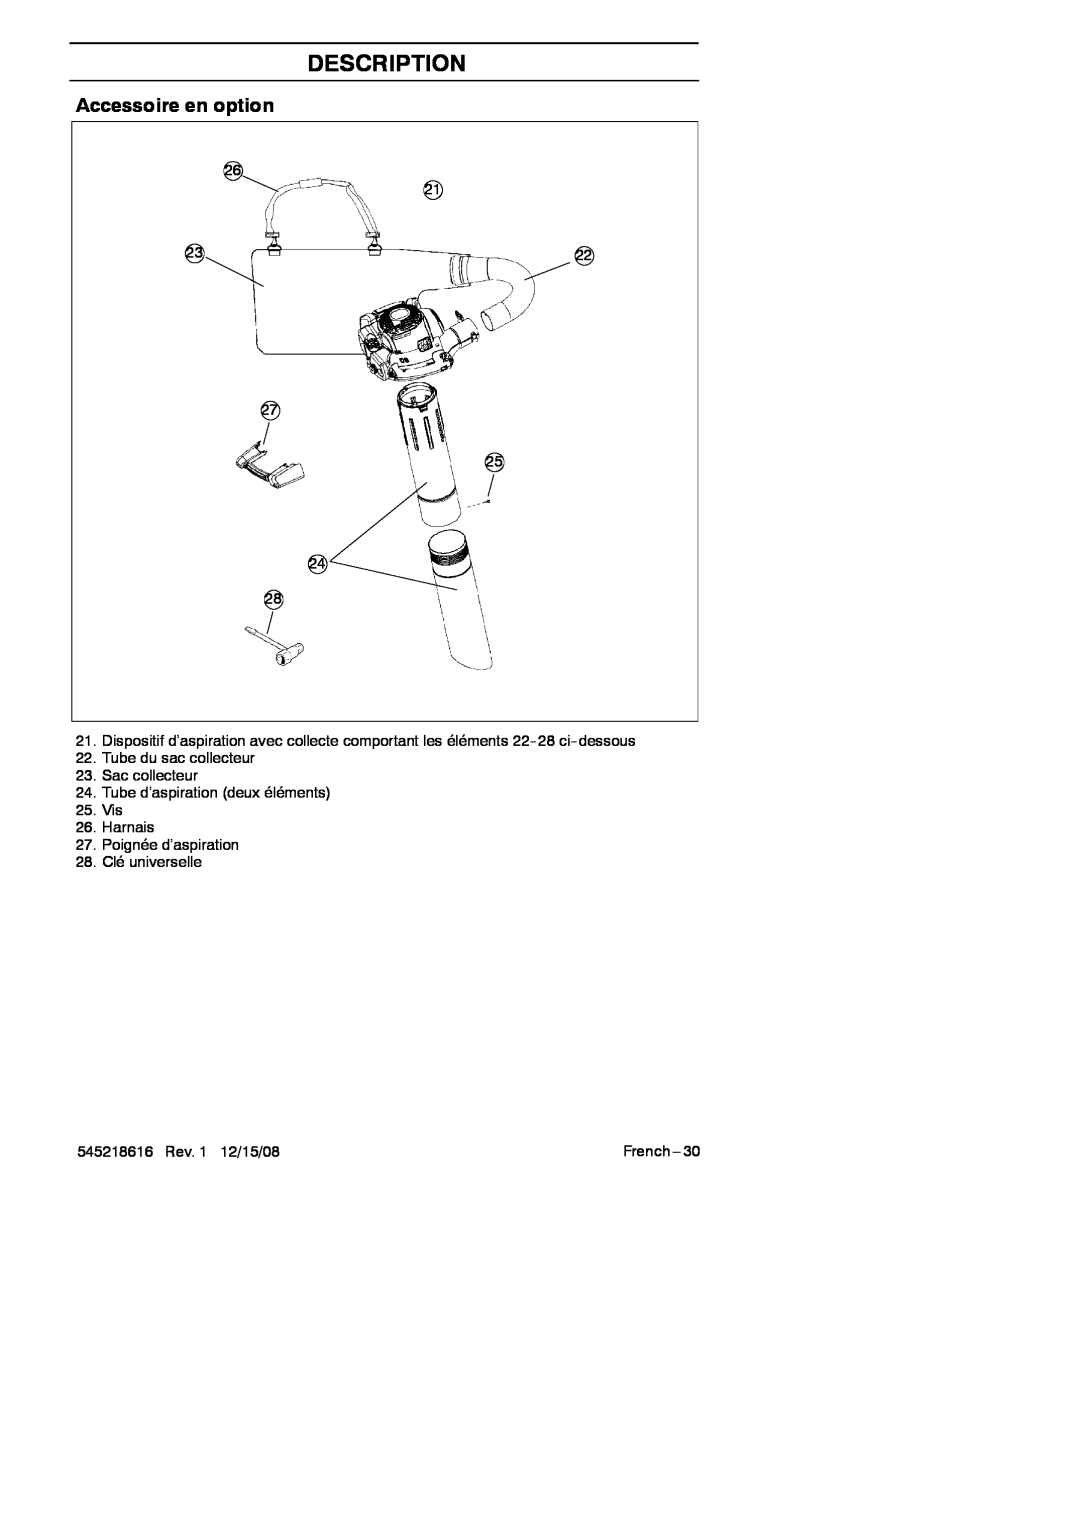 RedMax HB280 manual Accessoire en option, Description, 27 25, Tube du sac collecteur 23.Sac collecteur, 28.Clé universelle 